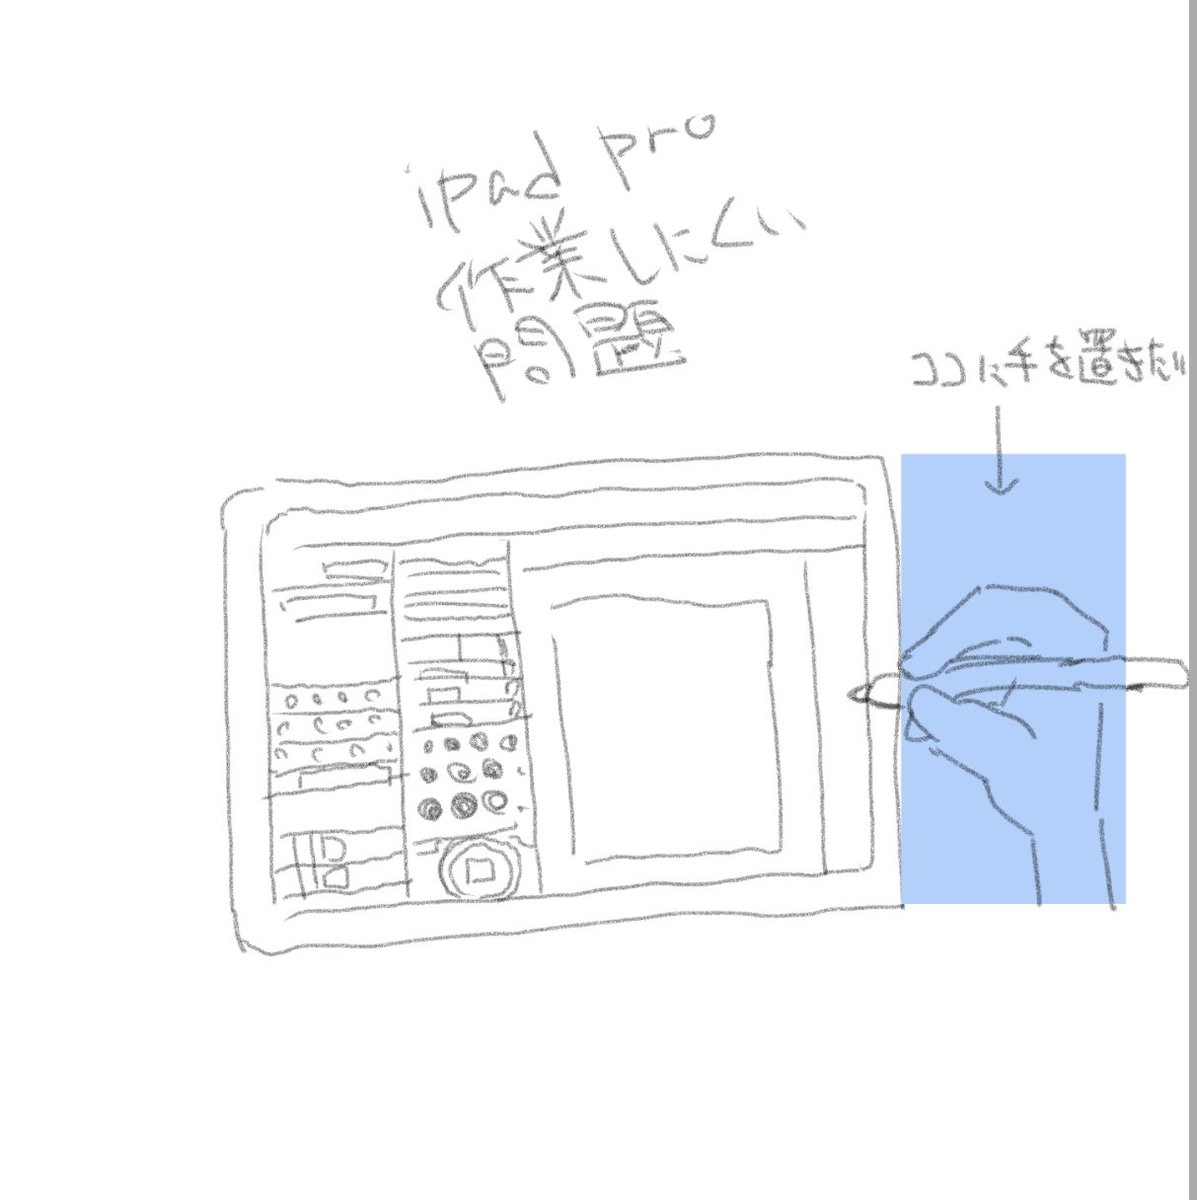 基本的にiPad Proは横向きに使うこと多いんだけど、手置きがないからとてもキッツイねん。
みんなの基本的な作業ポジションはどうなってんですかね? 